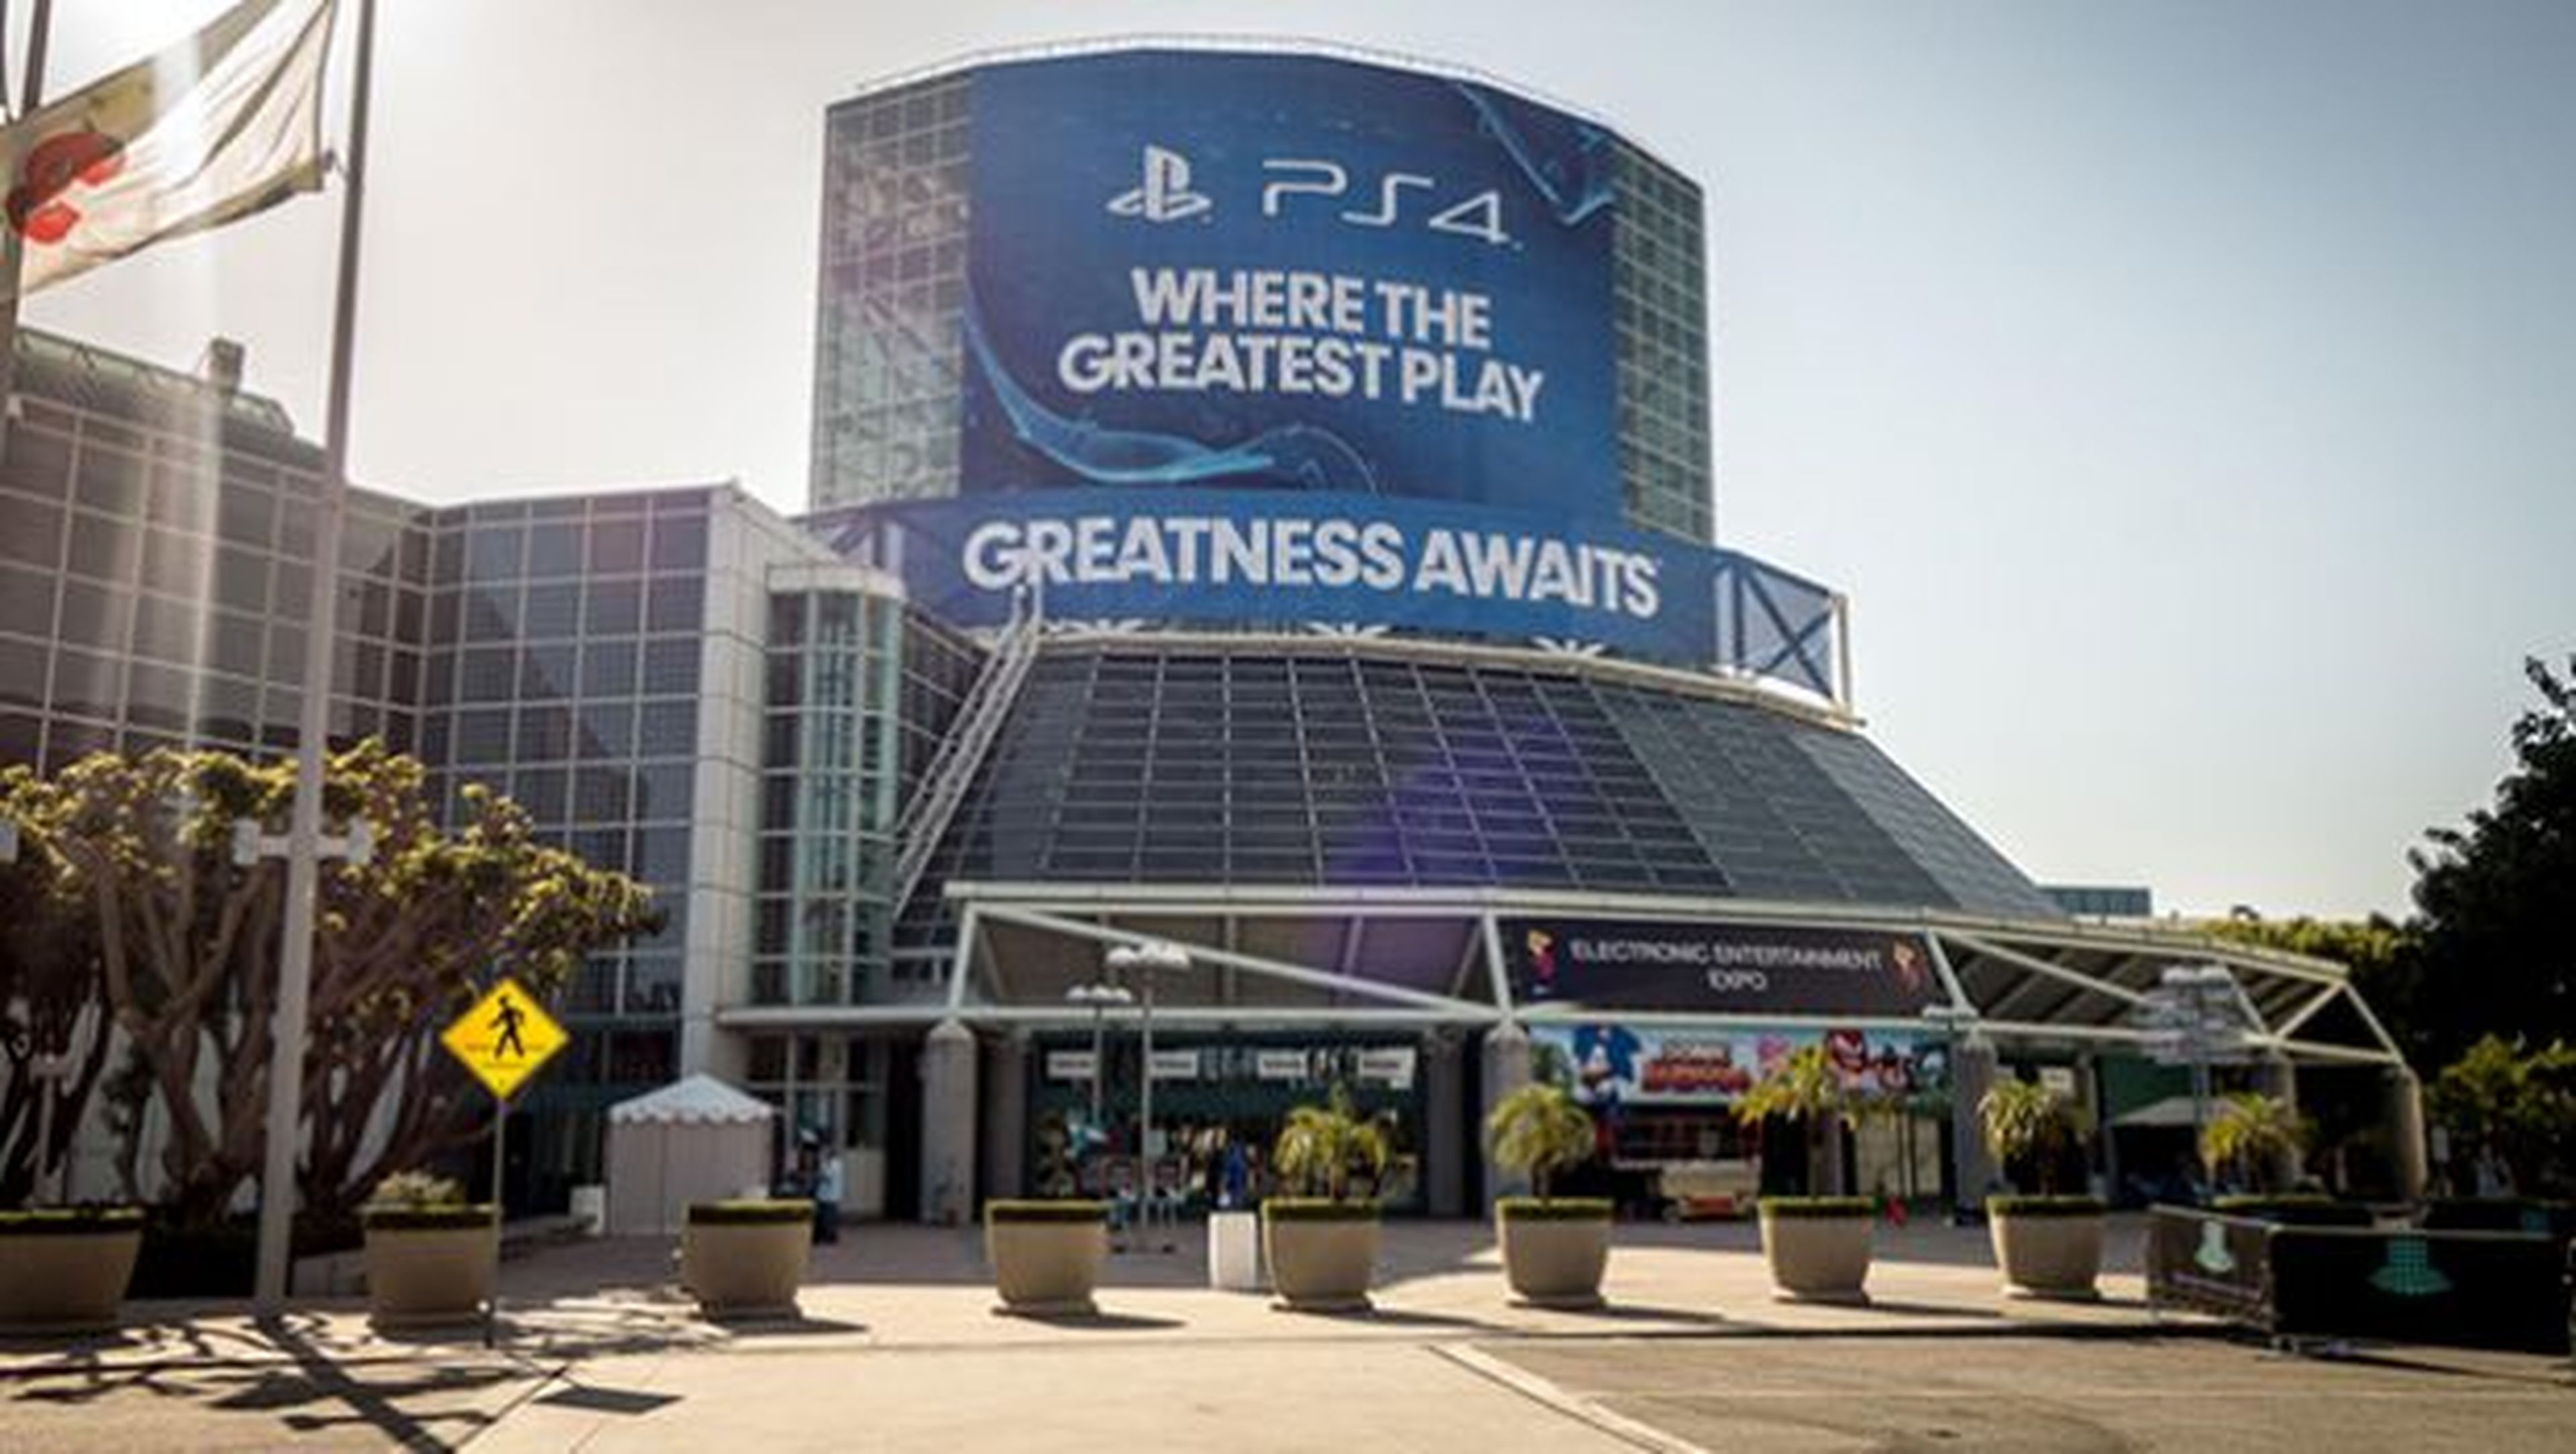 Convention Center Los Angeles E3